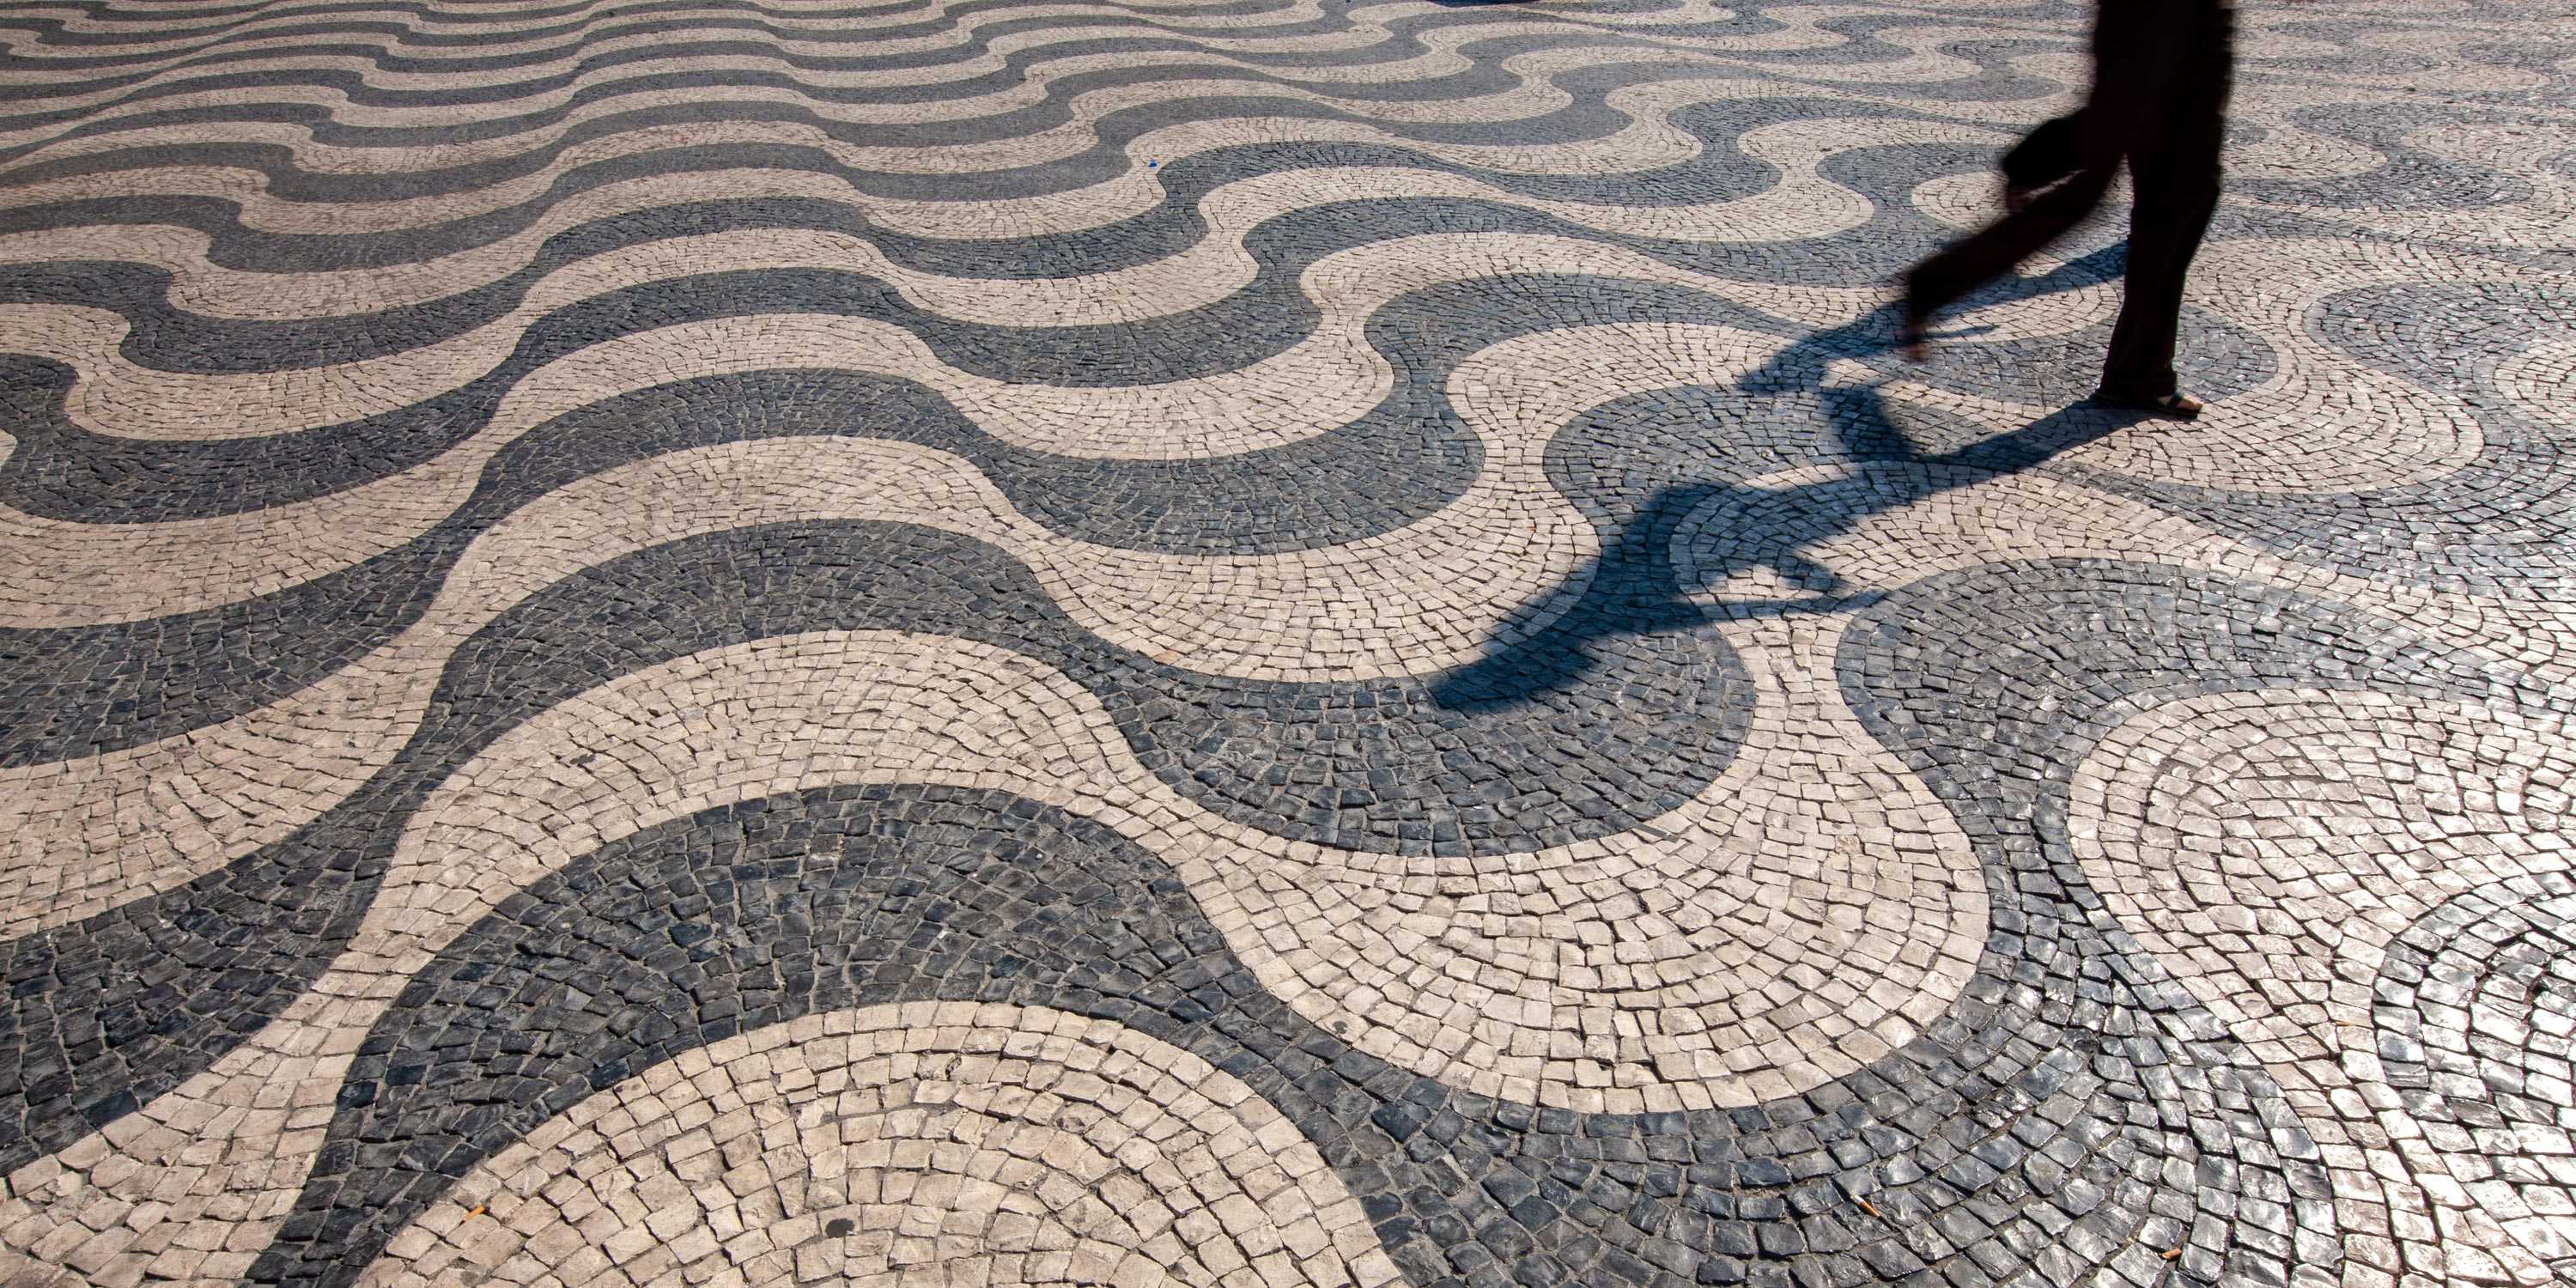 Gehsteig in Portugal mit symmetrischem Muster